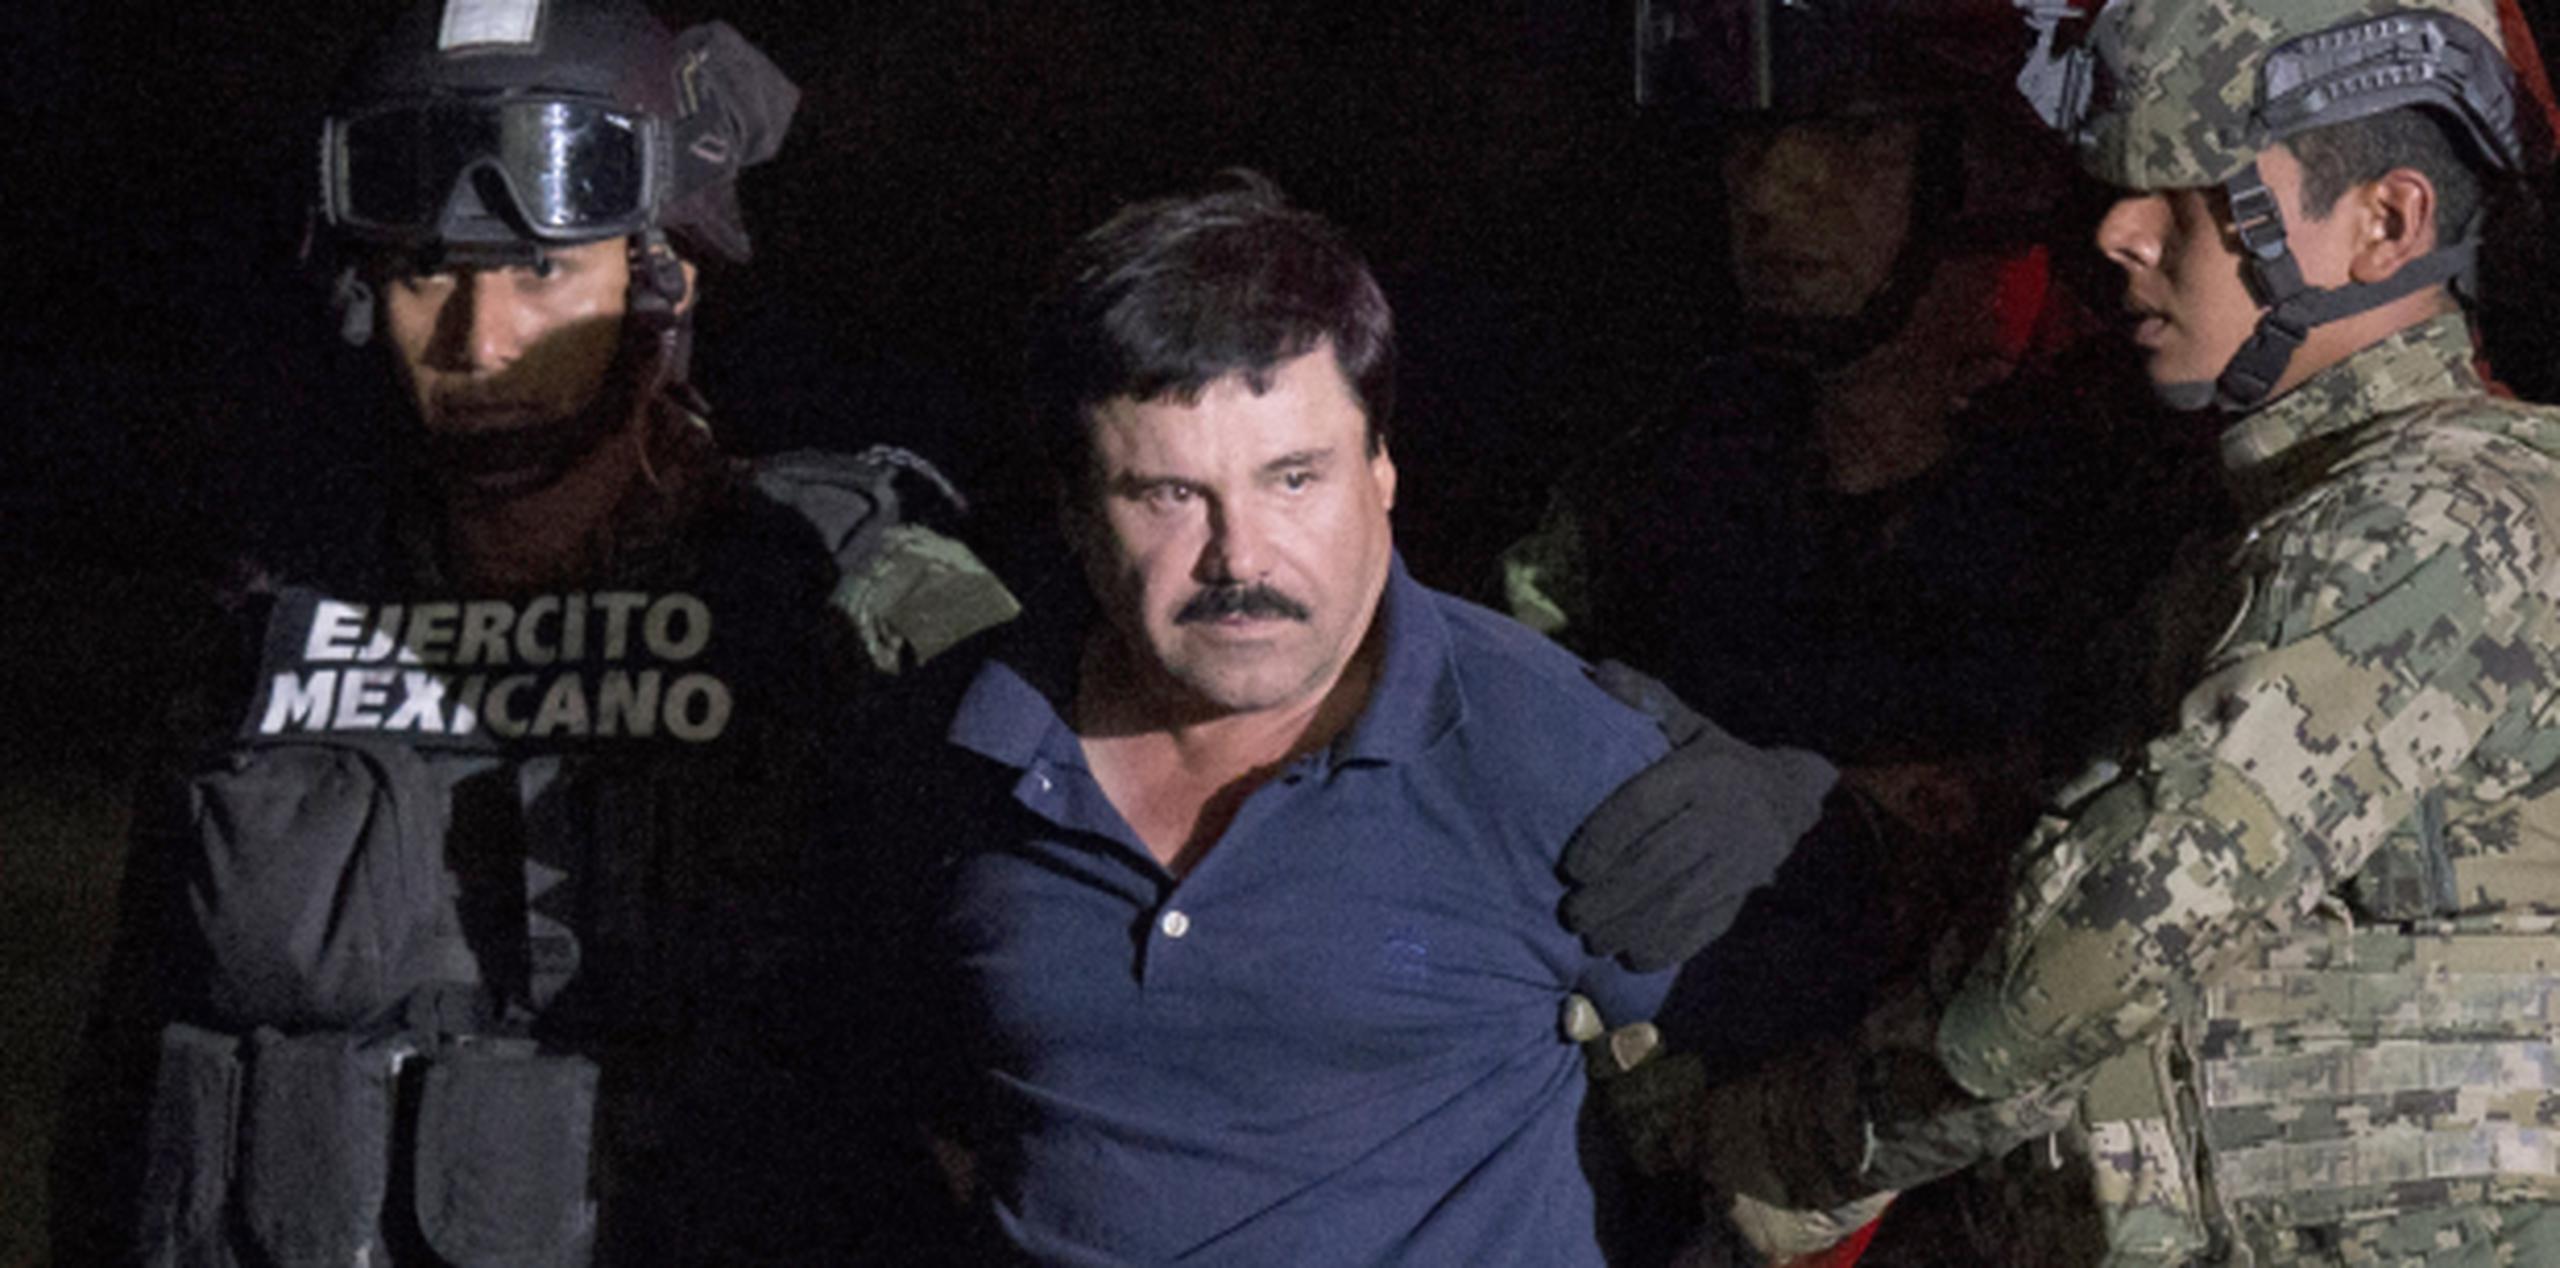 Algunos medios mexicanos han conjeturado que la transferencia de El Chapo es el preludio a una extradición inminente hacia Estados Unidos. (AP Photo/Rebecca Blackwell)